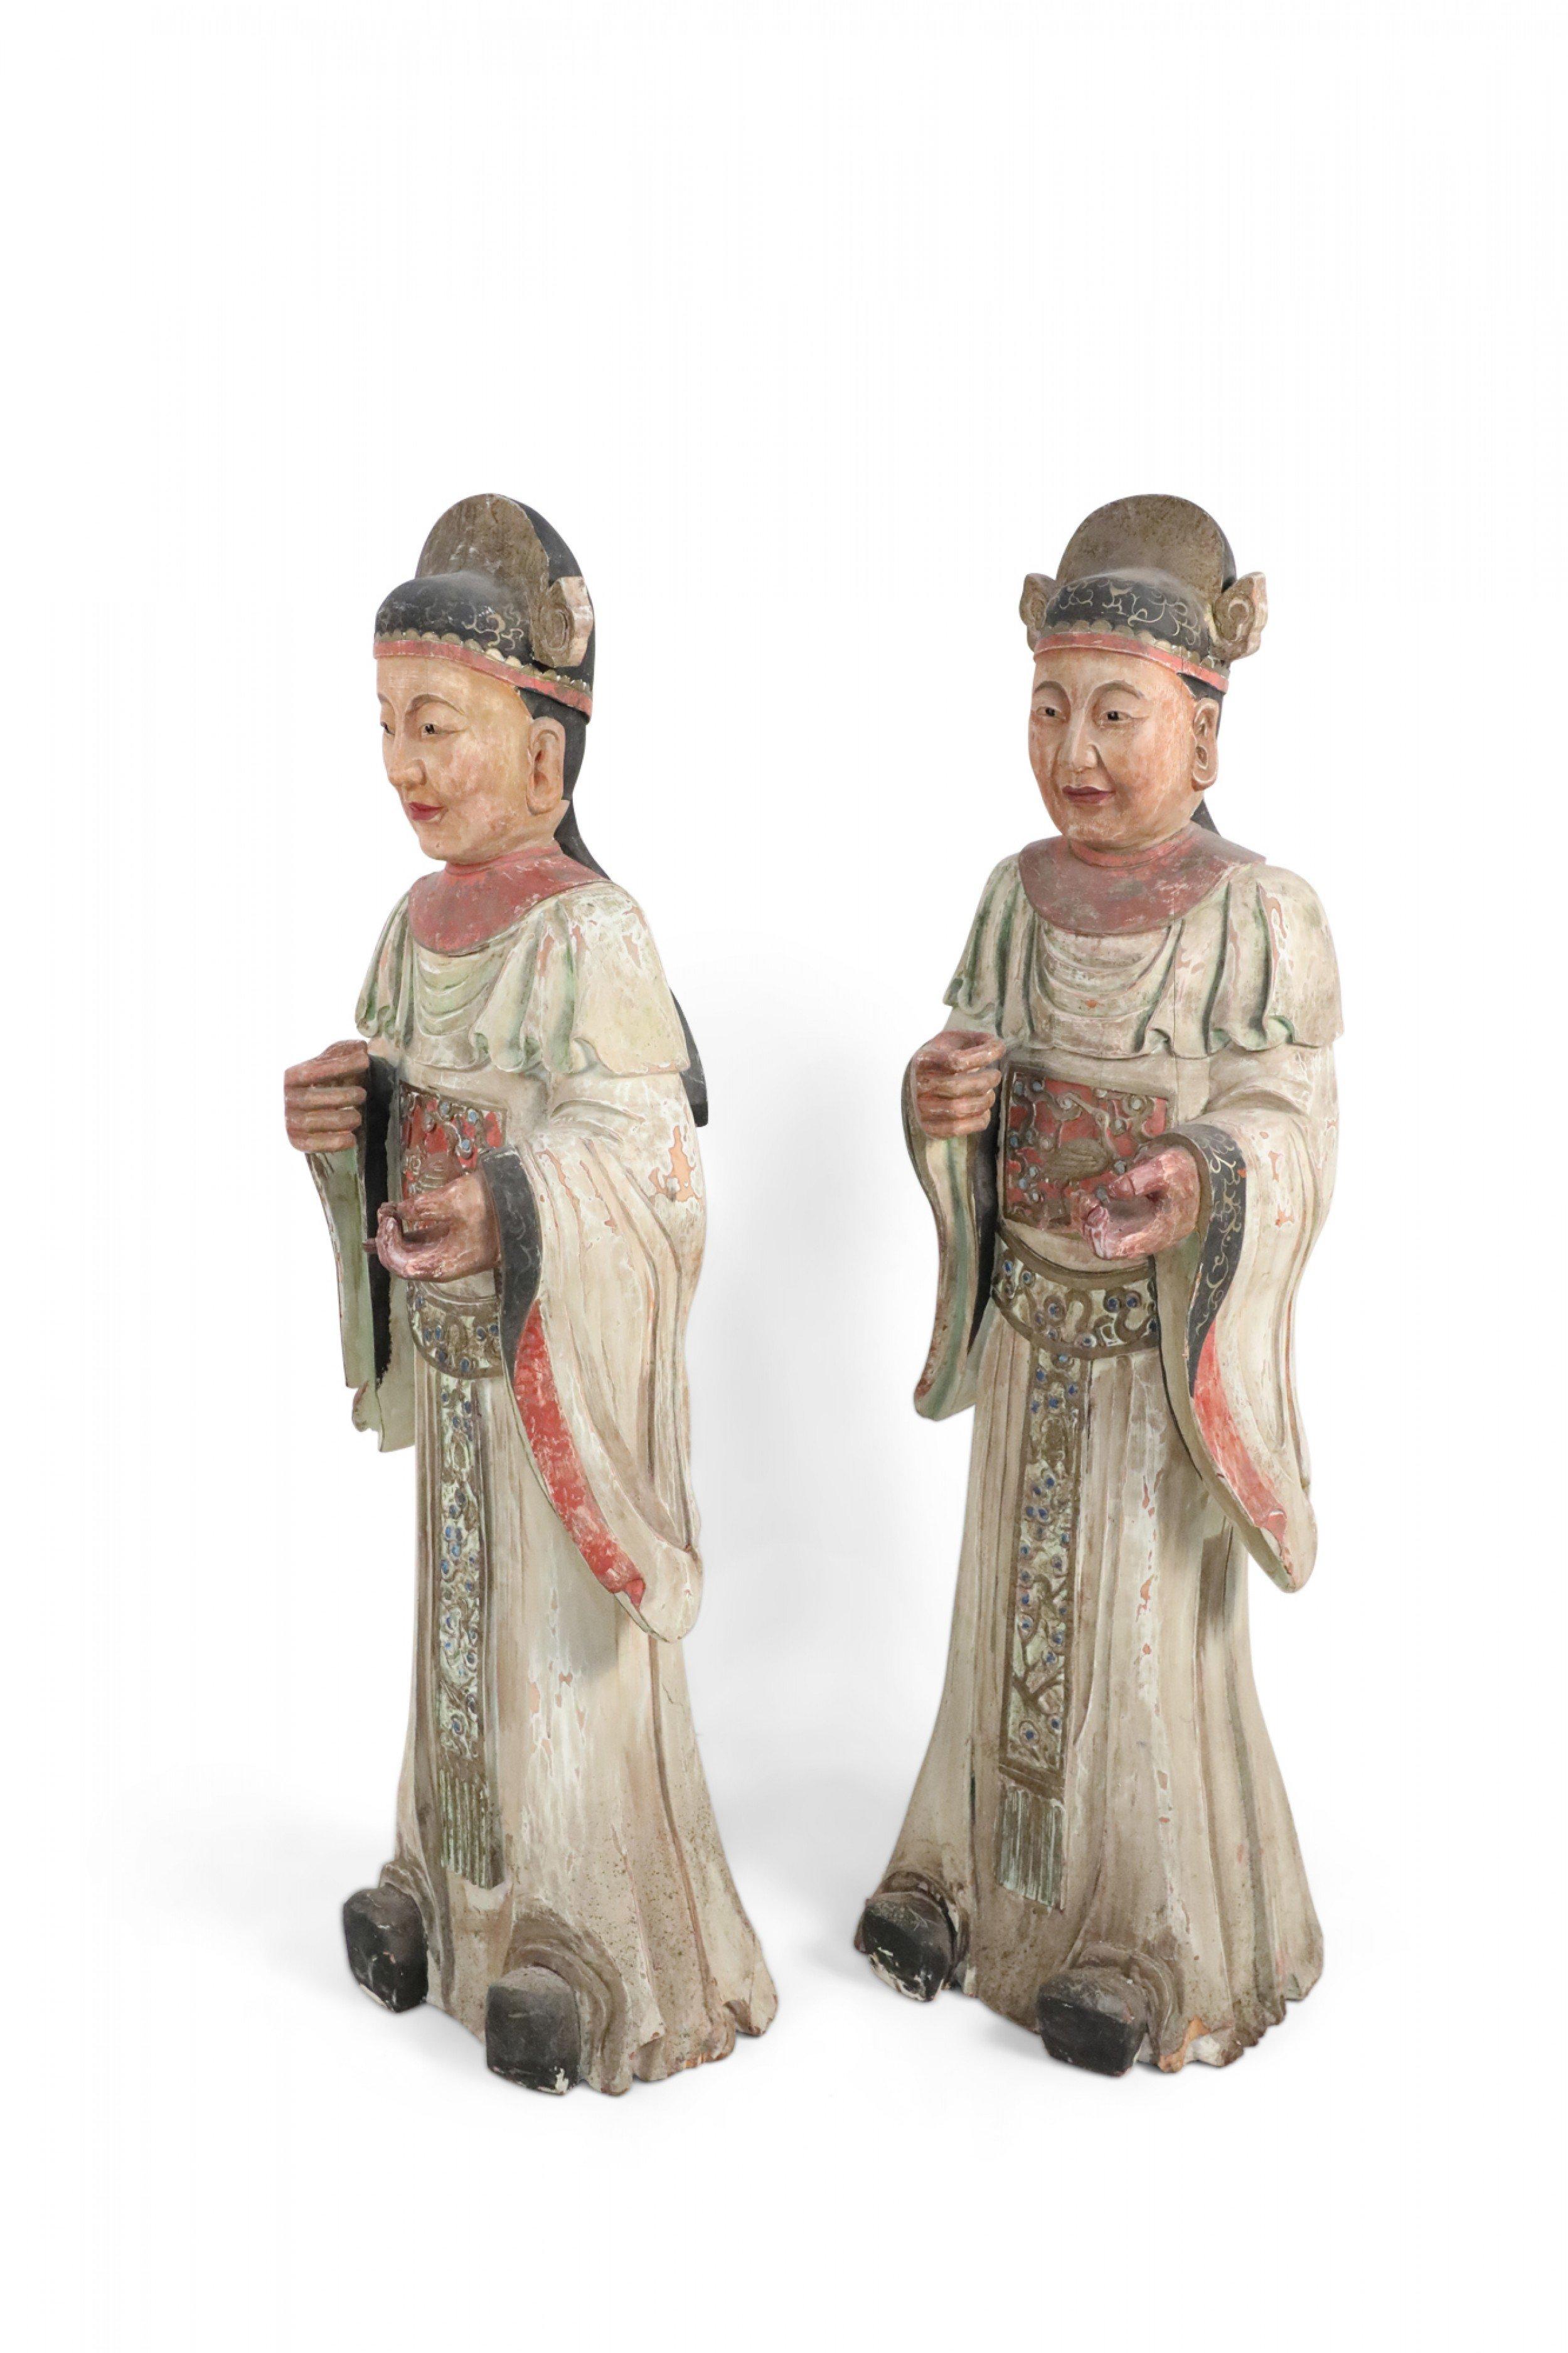 2 chinesische geschnitzte Holzstatuen von Zivilbeamten, die weiße Gewänder mit roter Verzierung, eine rote breite Schärpe über dem Ausschnitt und einen verzierten Gürtel unter dem Ausschnitt tragen (je Preis).
  